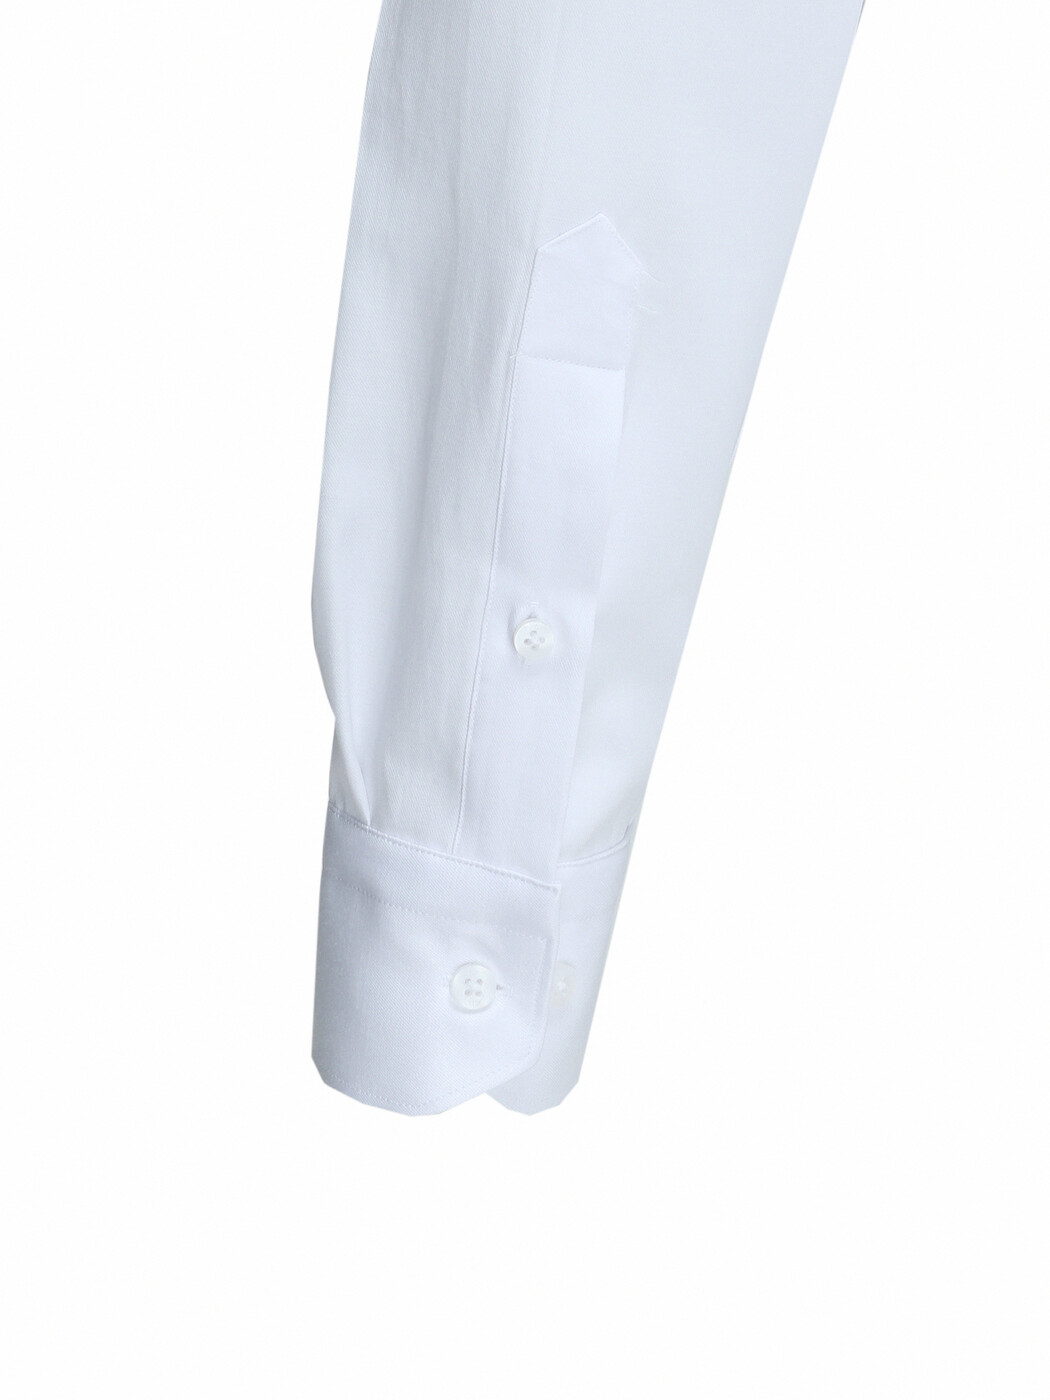 Beyaz Düz Regular Fit Dokuma Klasik Pamuk Karışımlı Gömlek - Thumbnail